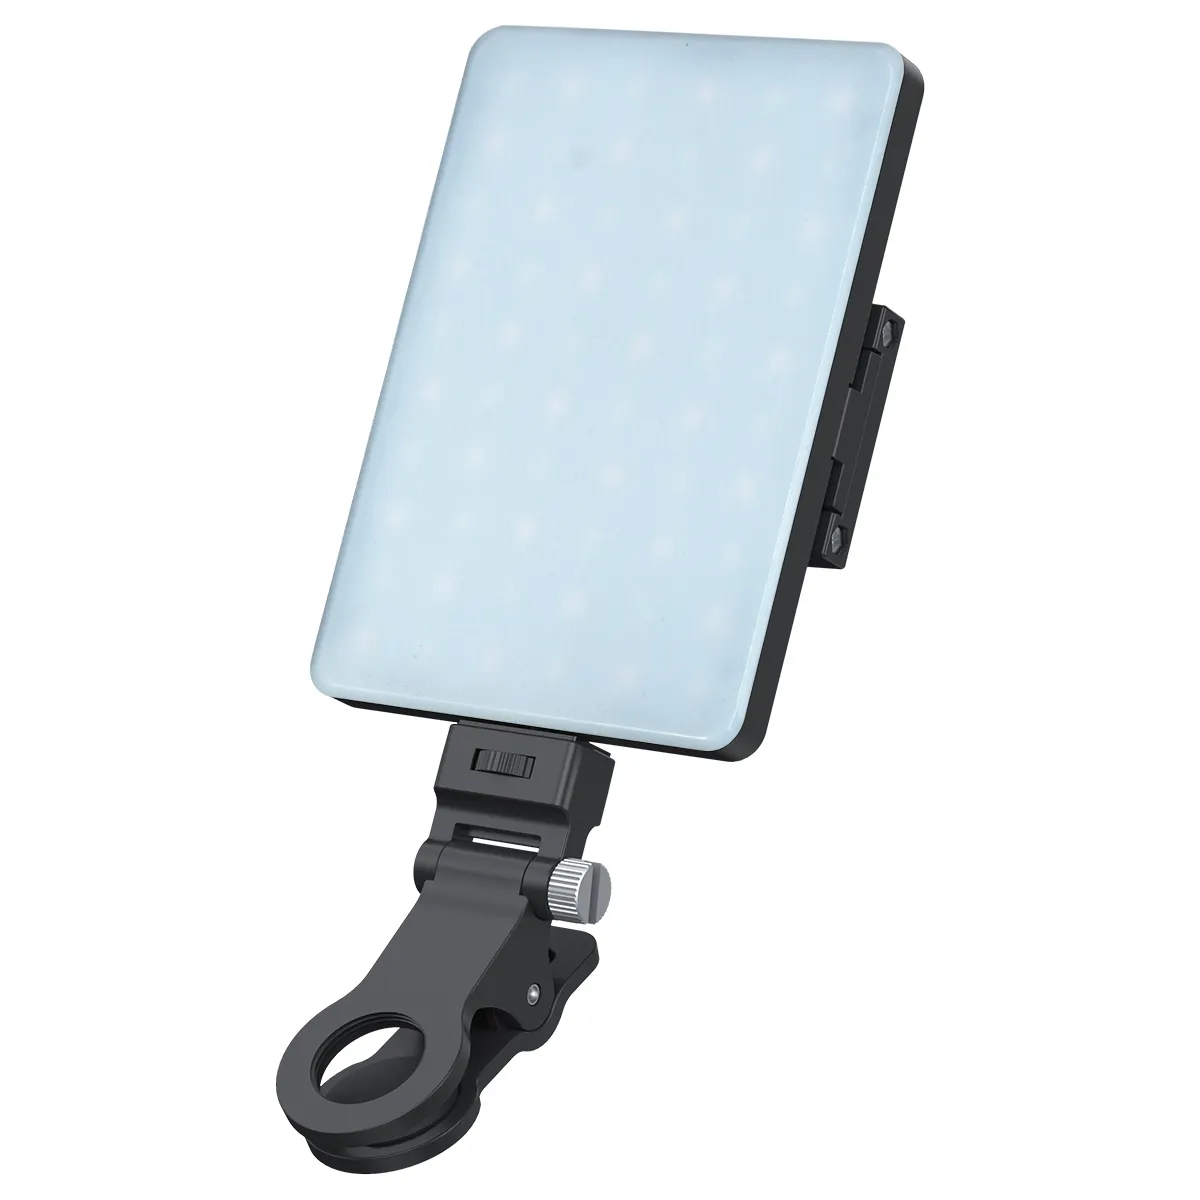 BAFANG lampu Panel LED, lampu kamera Mini swafoto dapat diisi ulang untuk ponsel